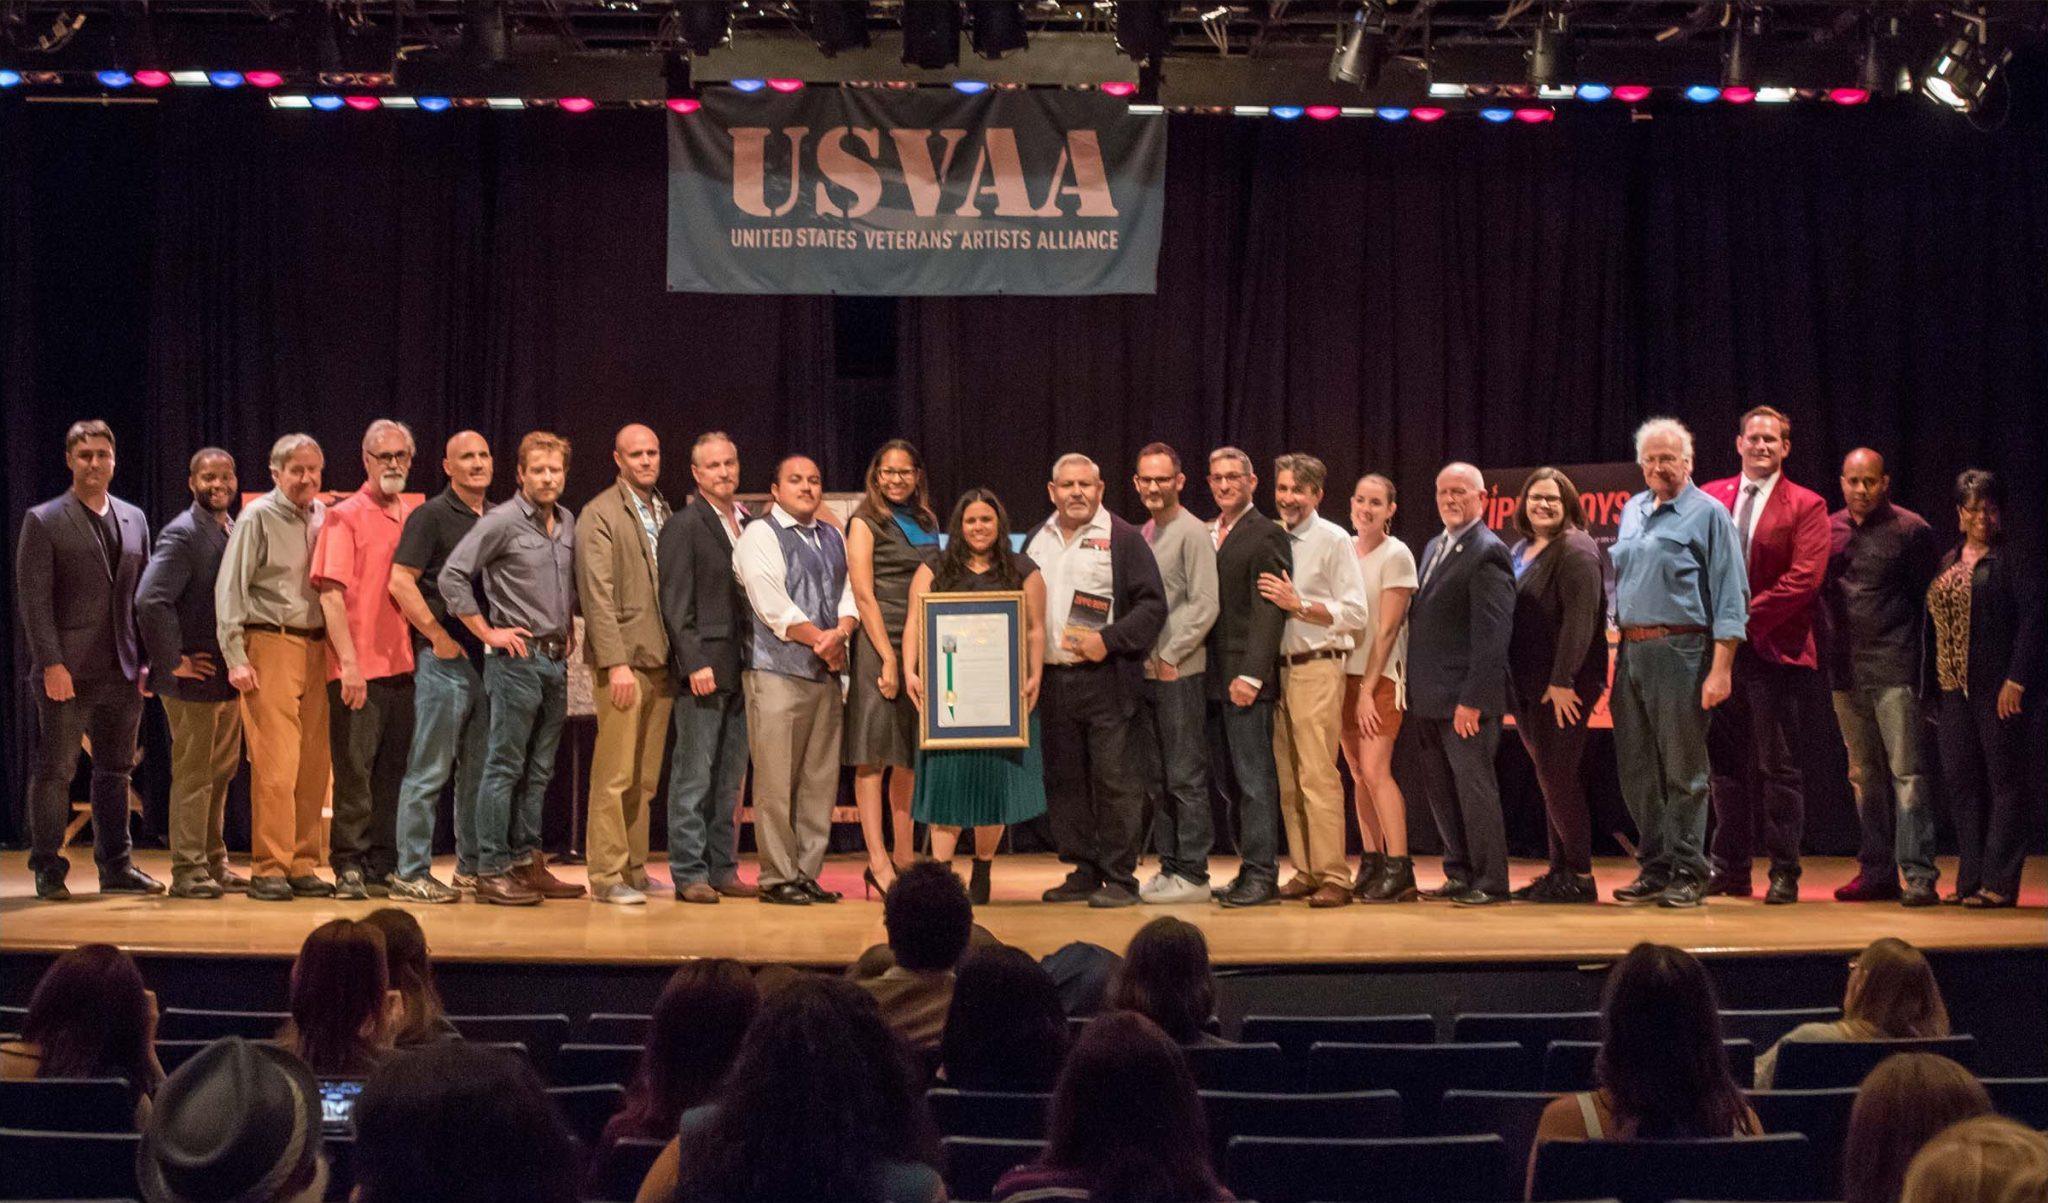 USVAA (United States Veterans Artists Alliance group photo